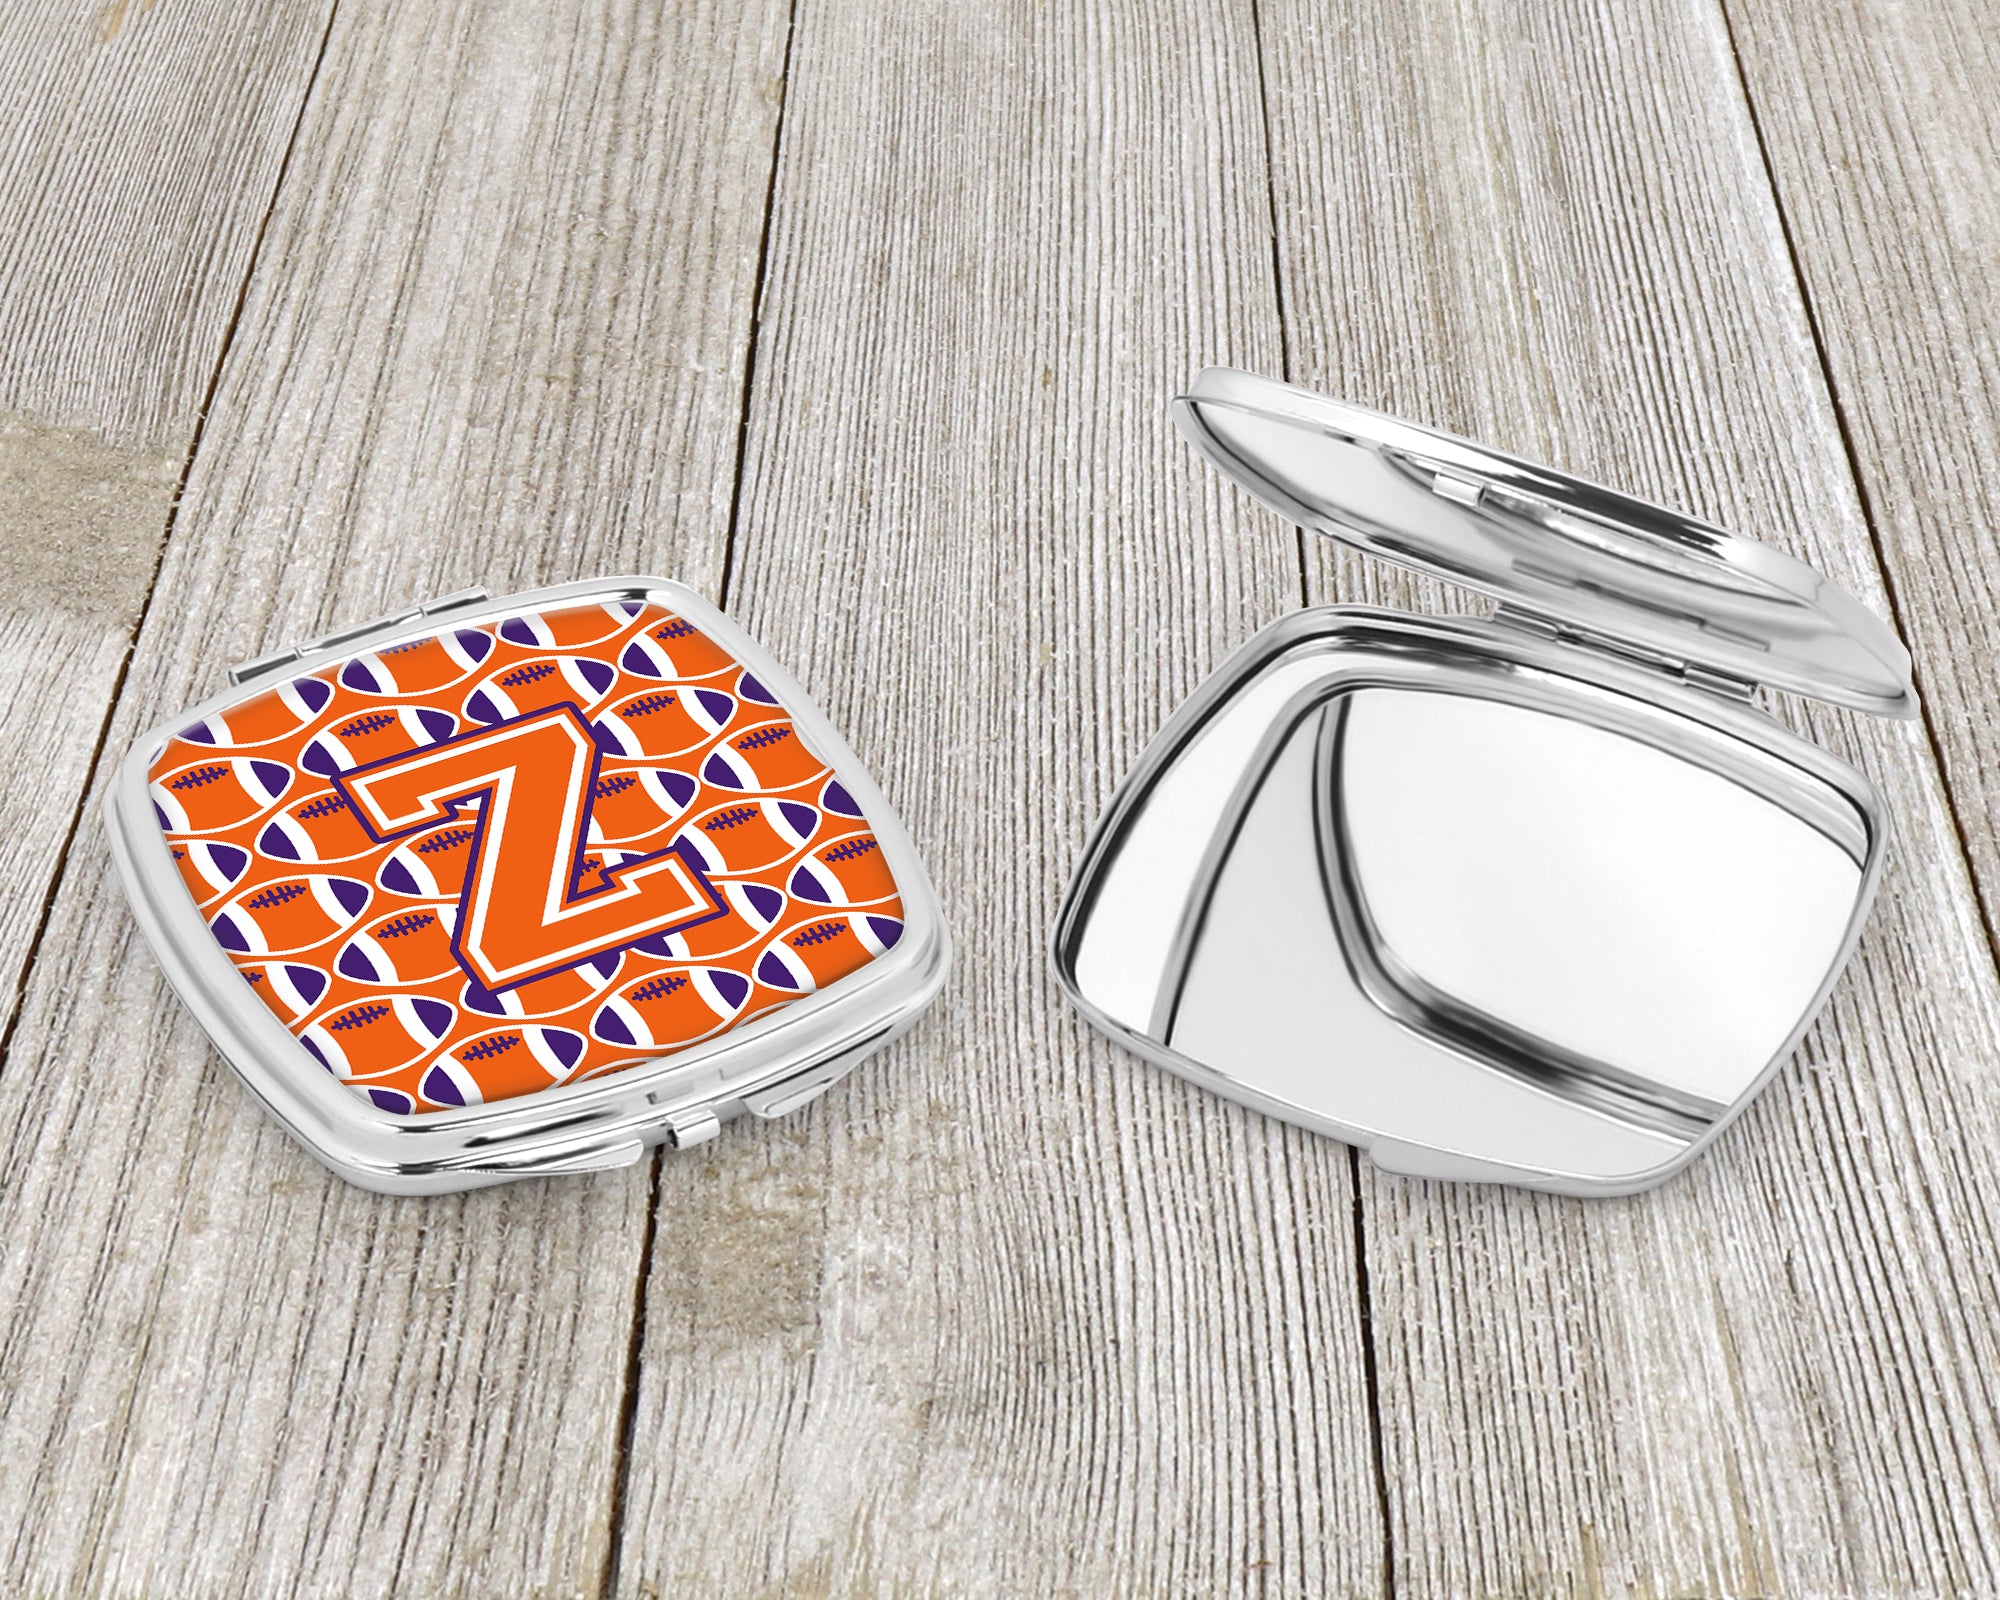 Letter Z Football Orange, White and Regalia Compact Mirror CJ1072-ZSCM